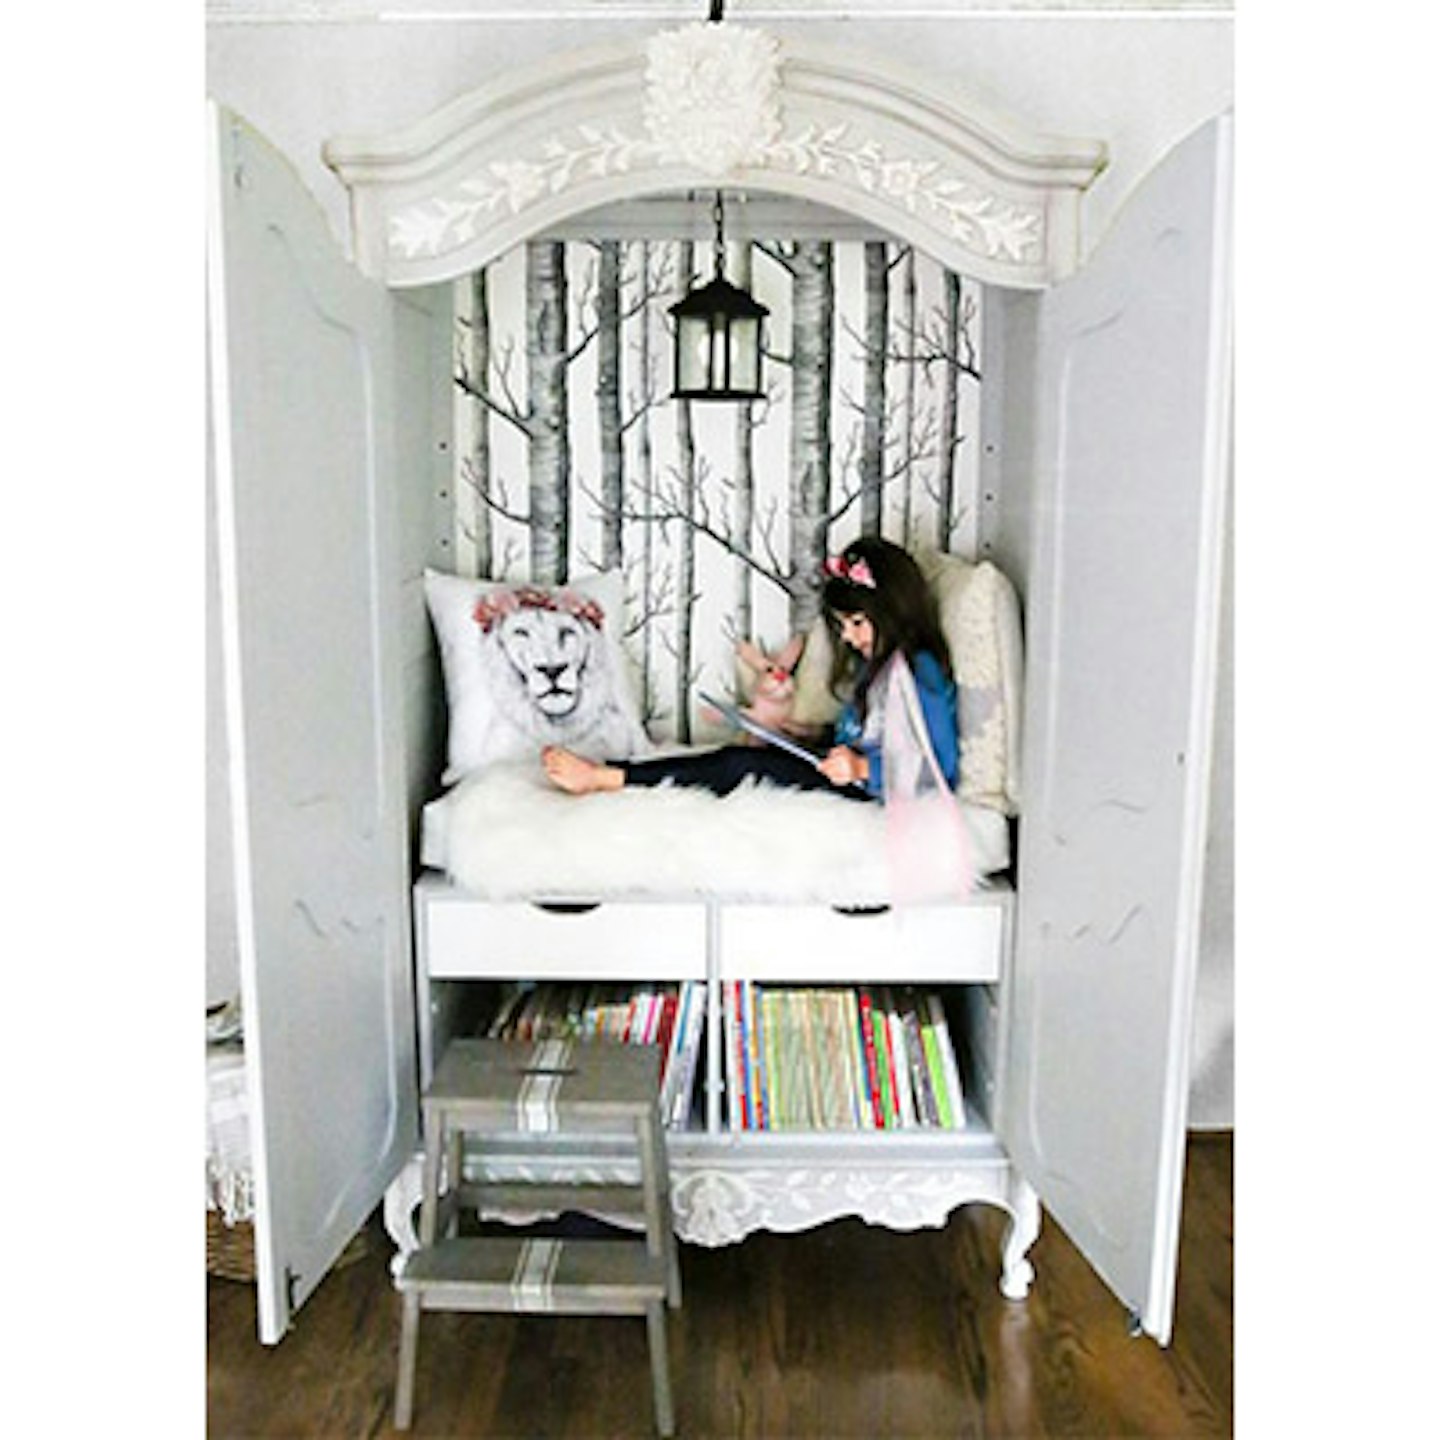 wardrobe inspired reading corner